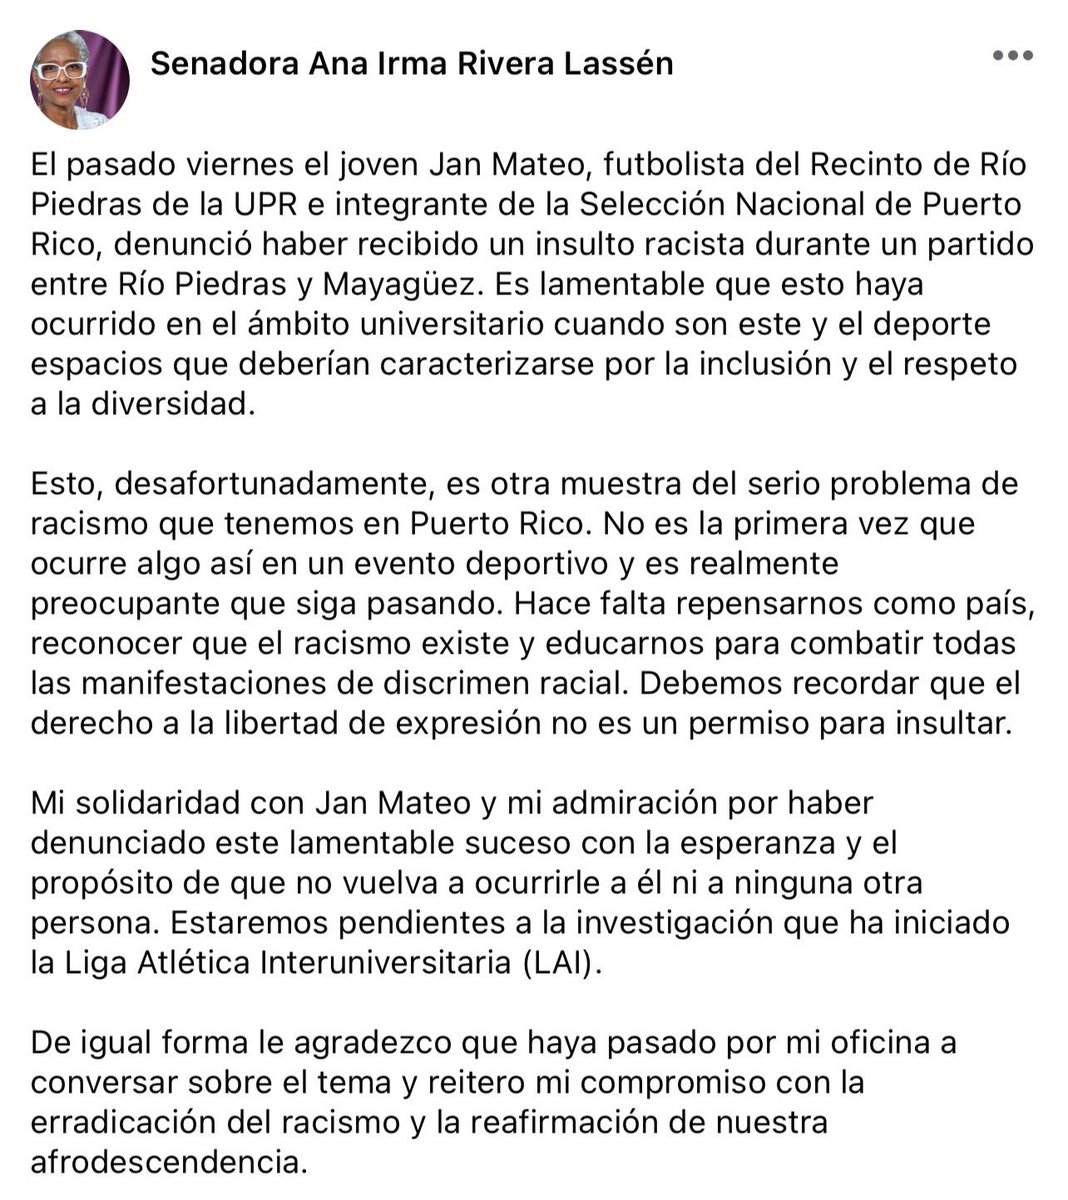 Mi solidaridad con el joven Jan Mateo, futbolista de la UPRRP e integrante de la Selección Nacional de PR, quien el pasado viernes recibió un insulto racista durante un partido entre Río Piedras y Mayagüez. Es inaceptable que esto siga ocurriendo.